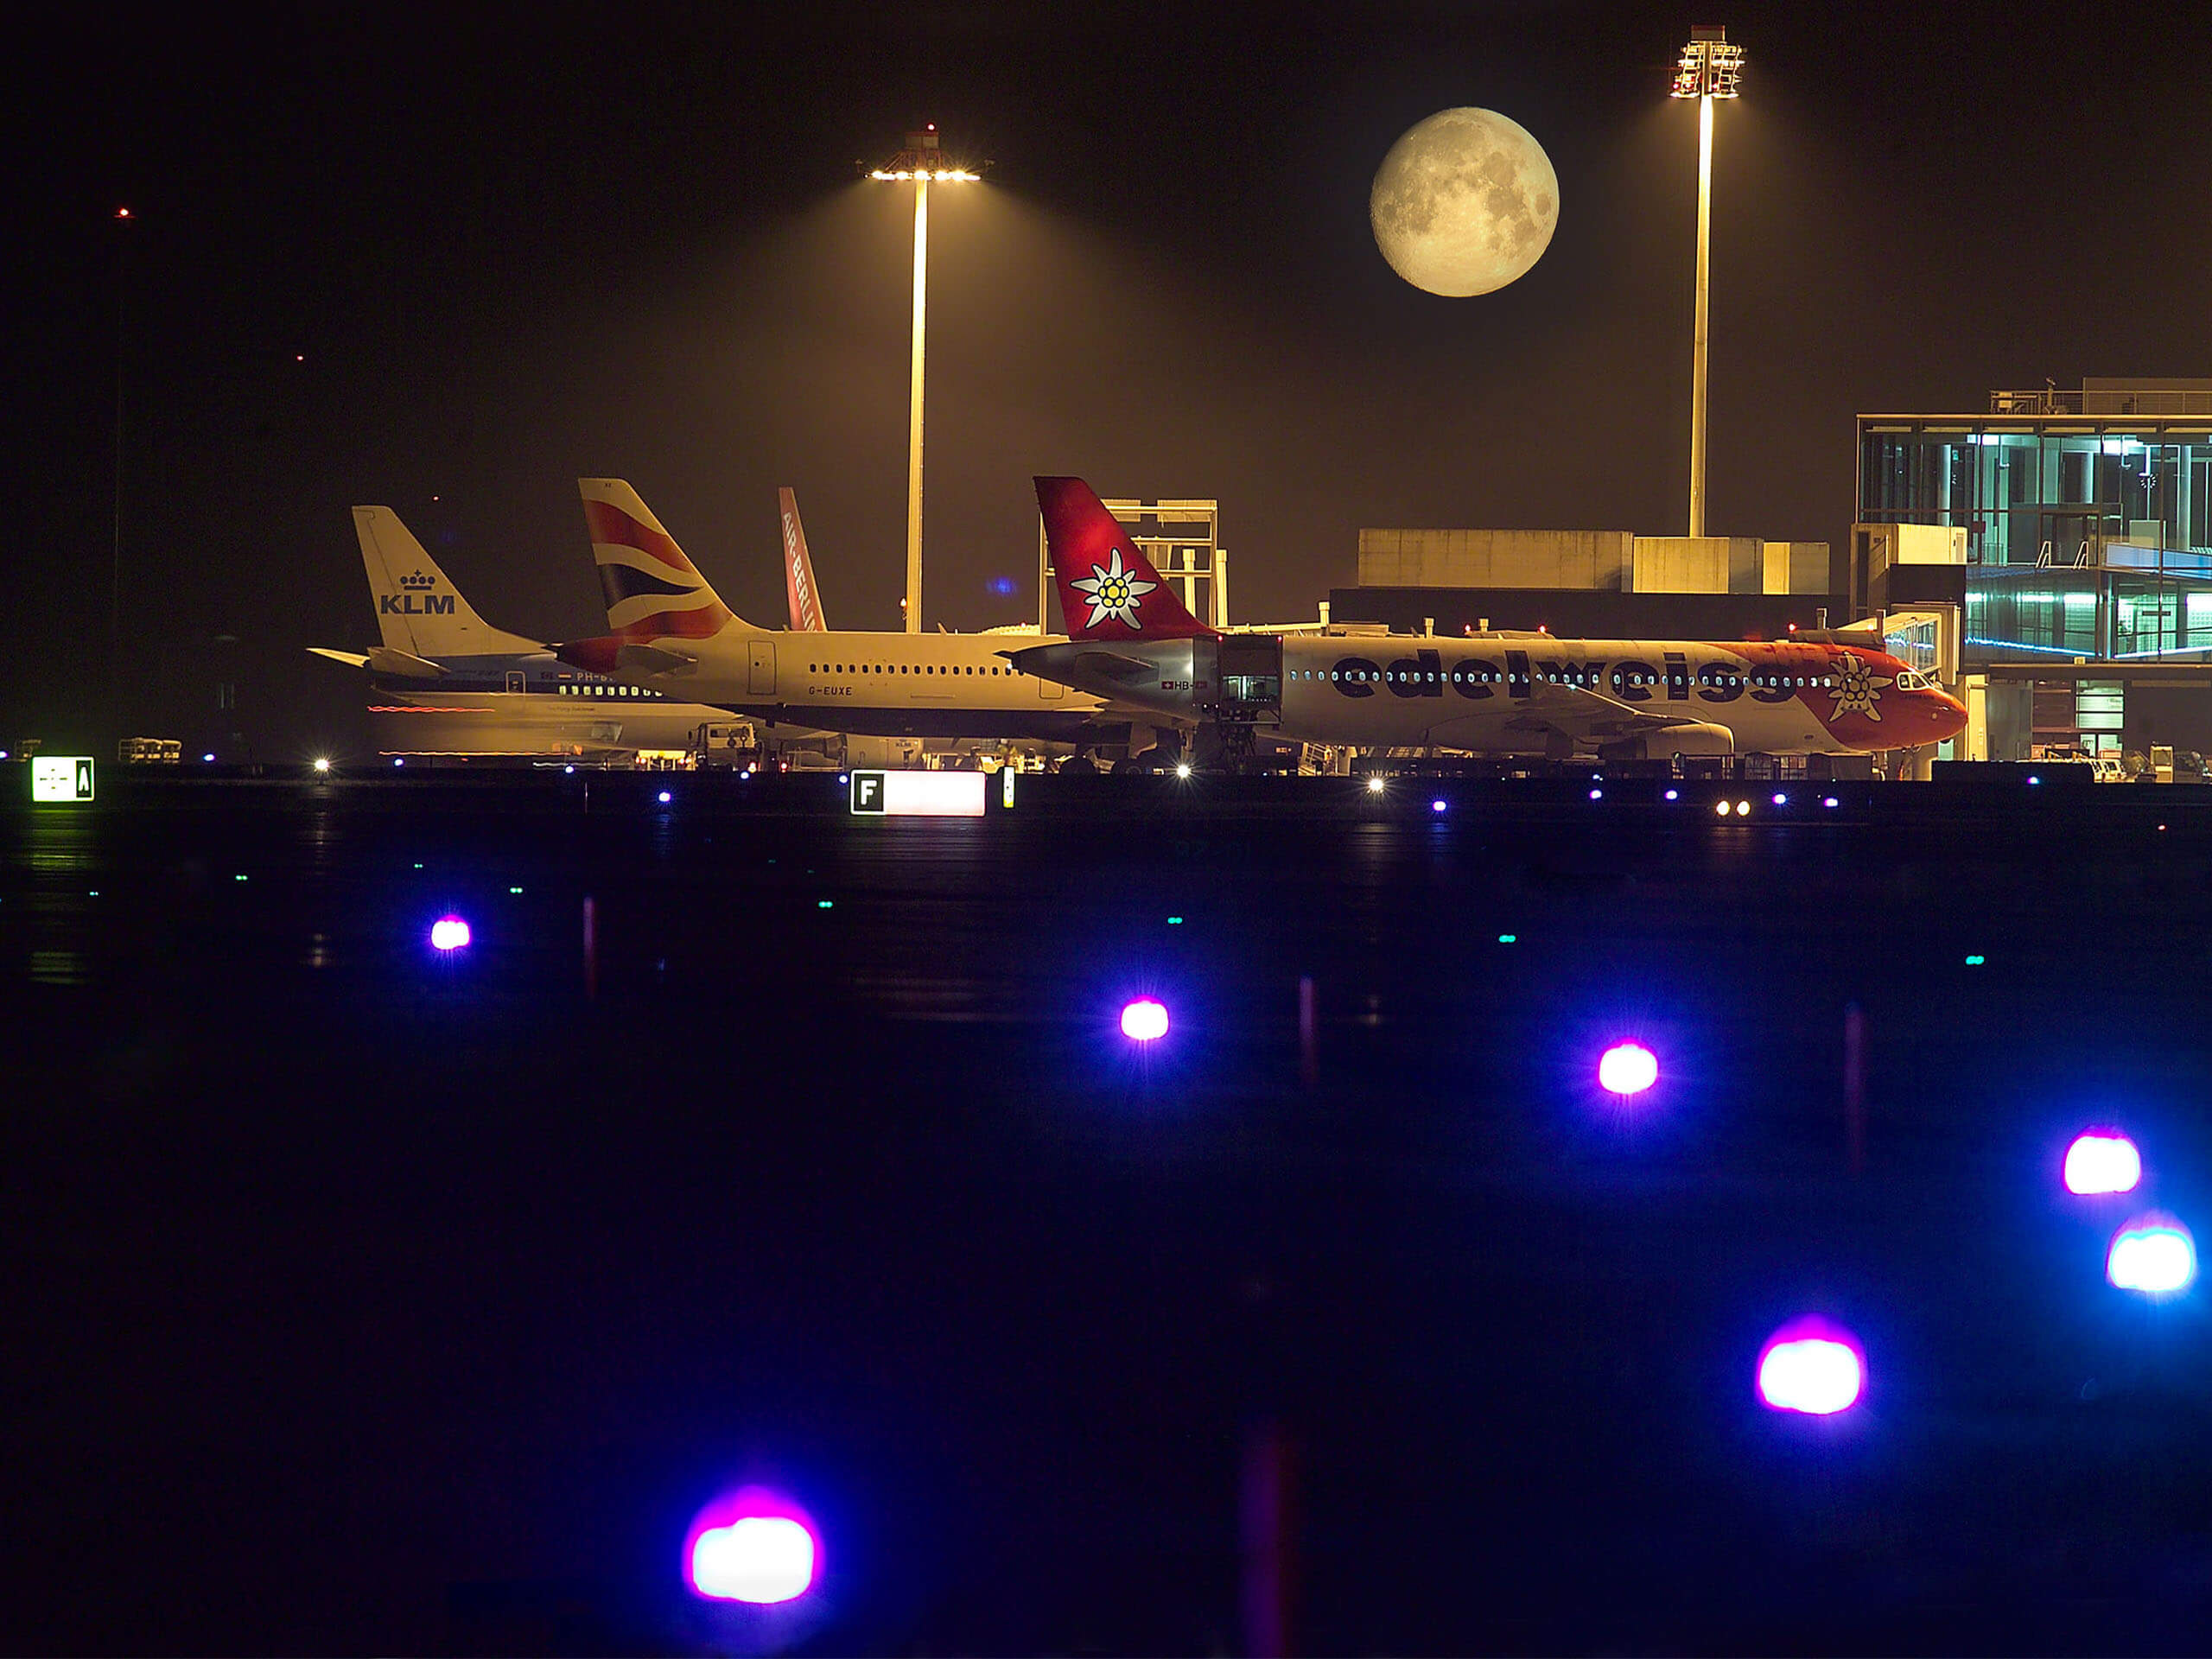 Zurich Airport by night